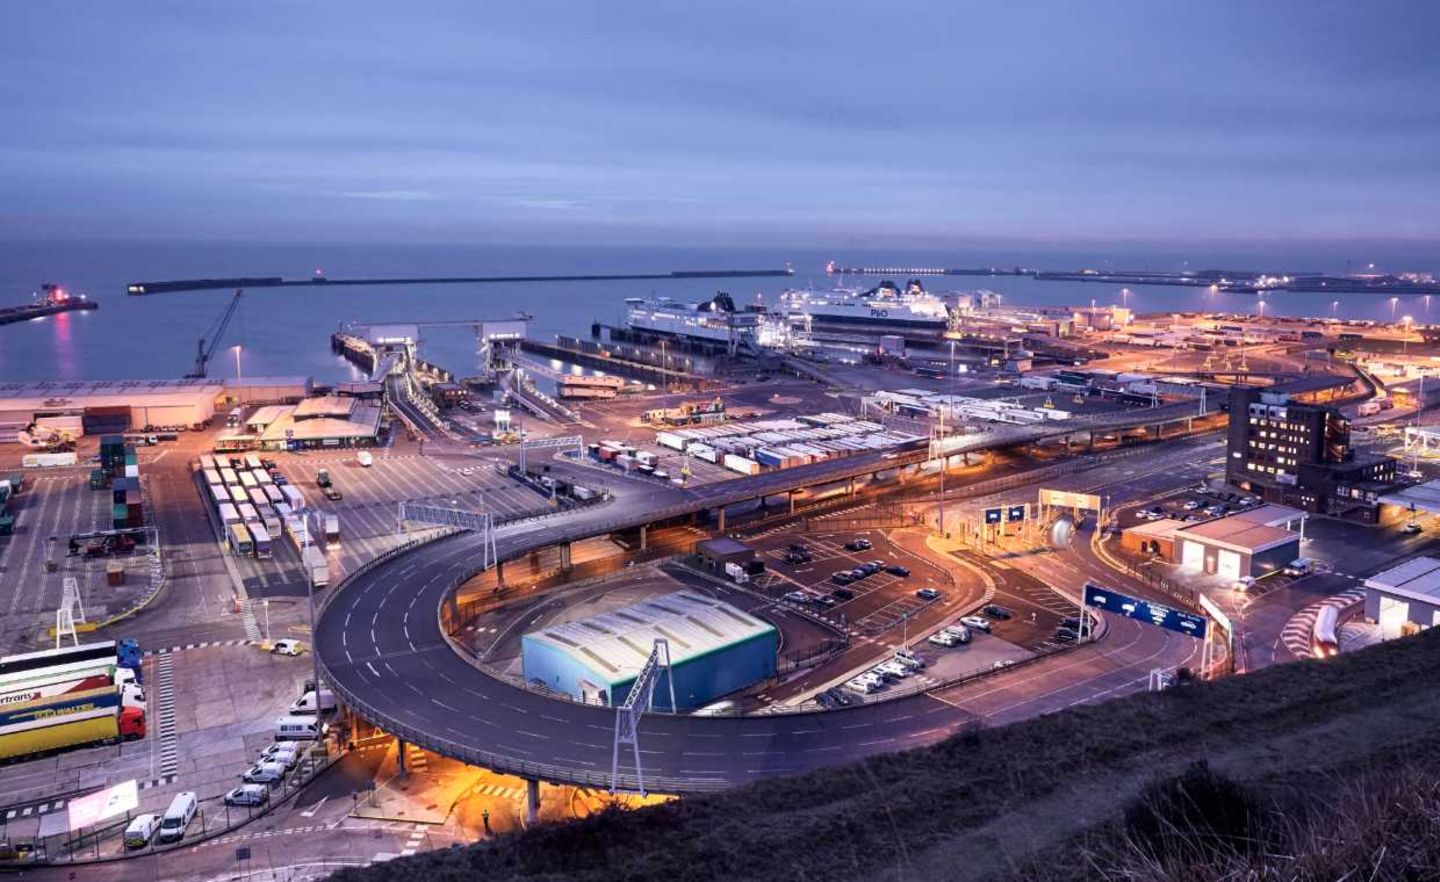 Die Lebensader: Durch den Port of Dover werden pro Jahr Güter im Wert von 119 Mrd. Pfund geschleust